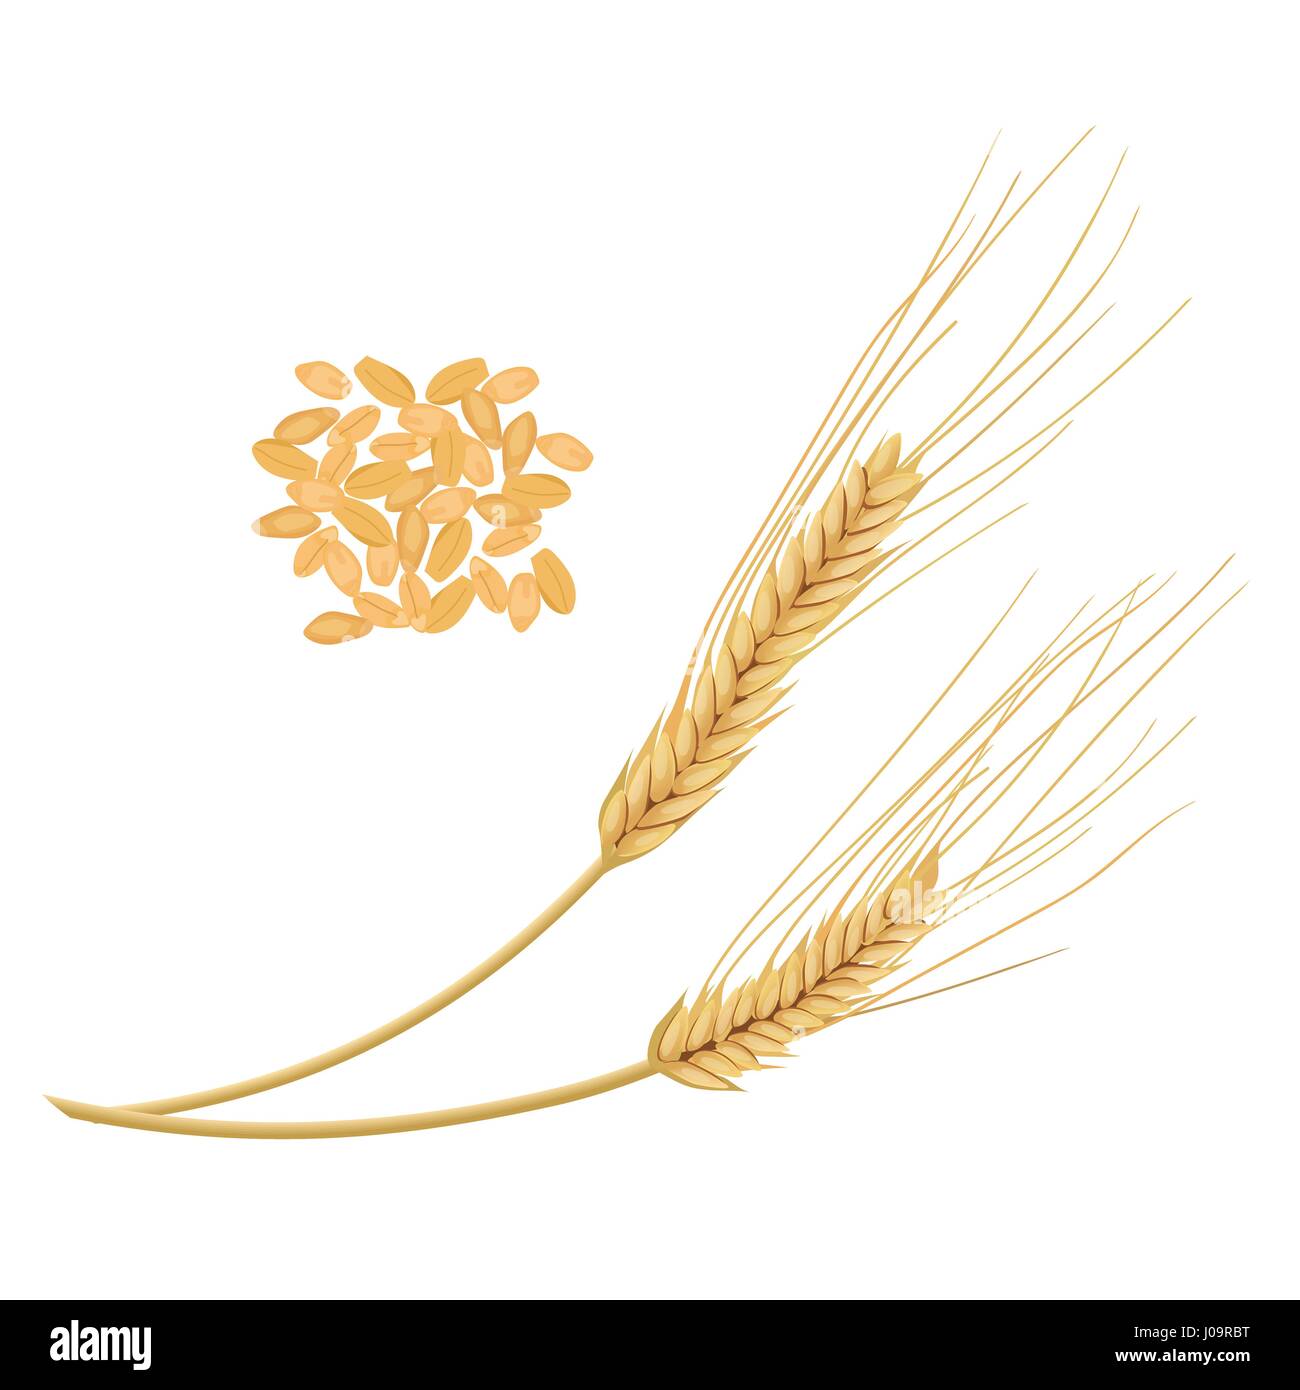 Les épis de blé avec des grains isolé sur fond blanc. Golden Spike. Vue de côté. Close up. Vector illustration. Pour la cuisson, de l'alimentation, les cosmétiques, l'alimentation de conception Illustration de Vecteur